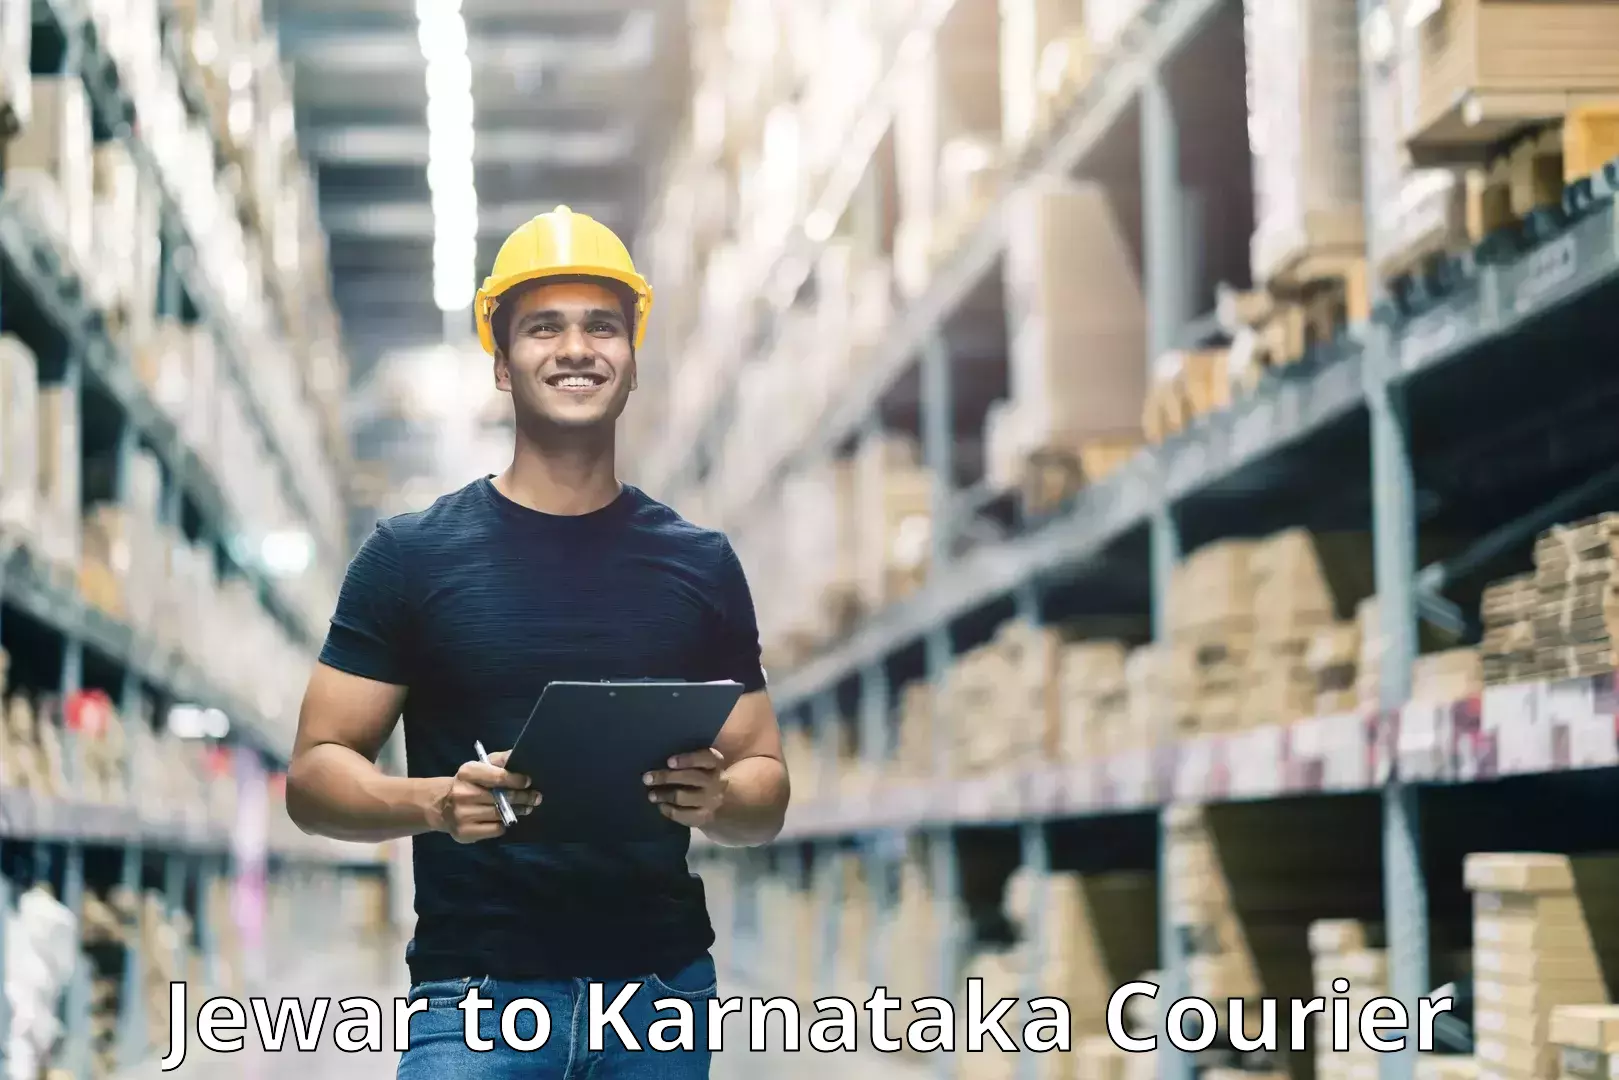 Reliable logistics providers Jewar to Gurmatkal